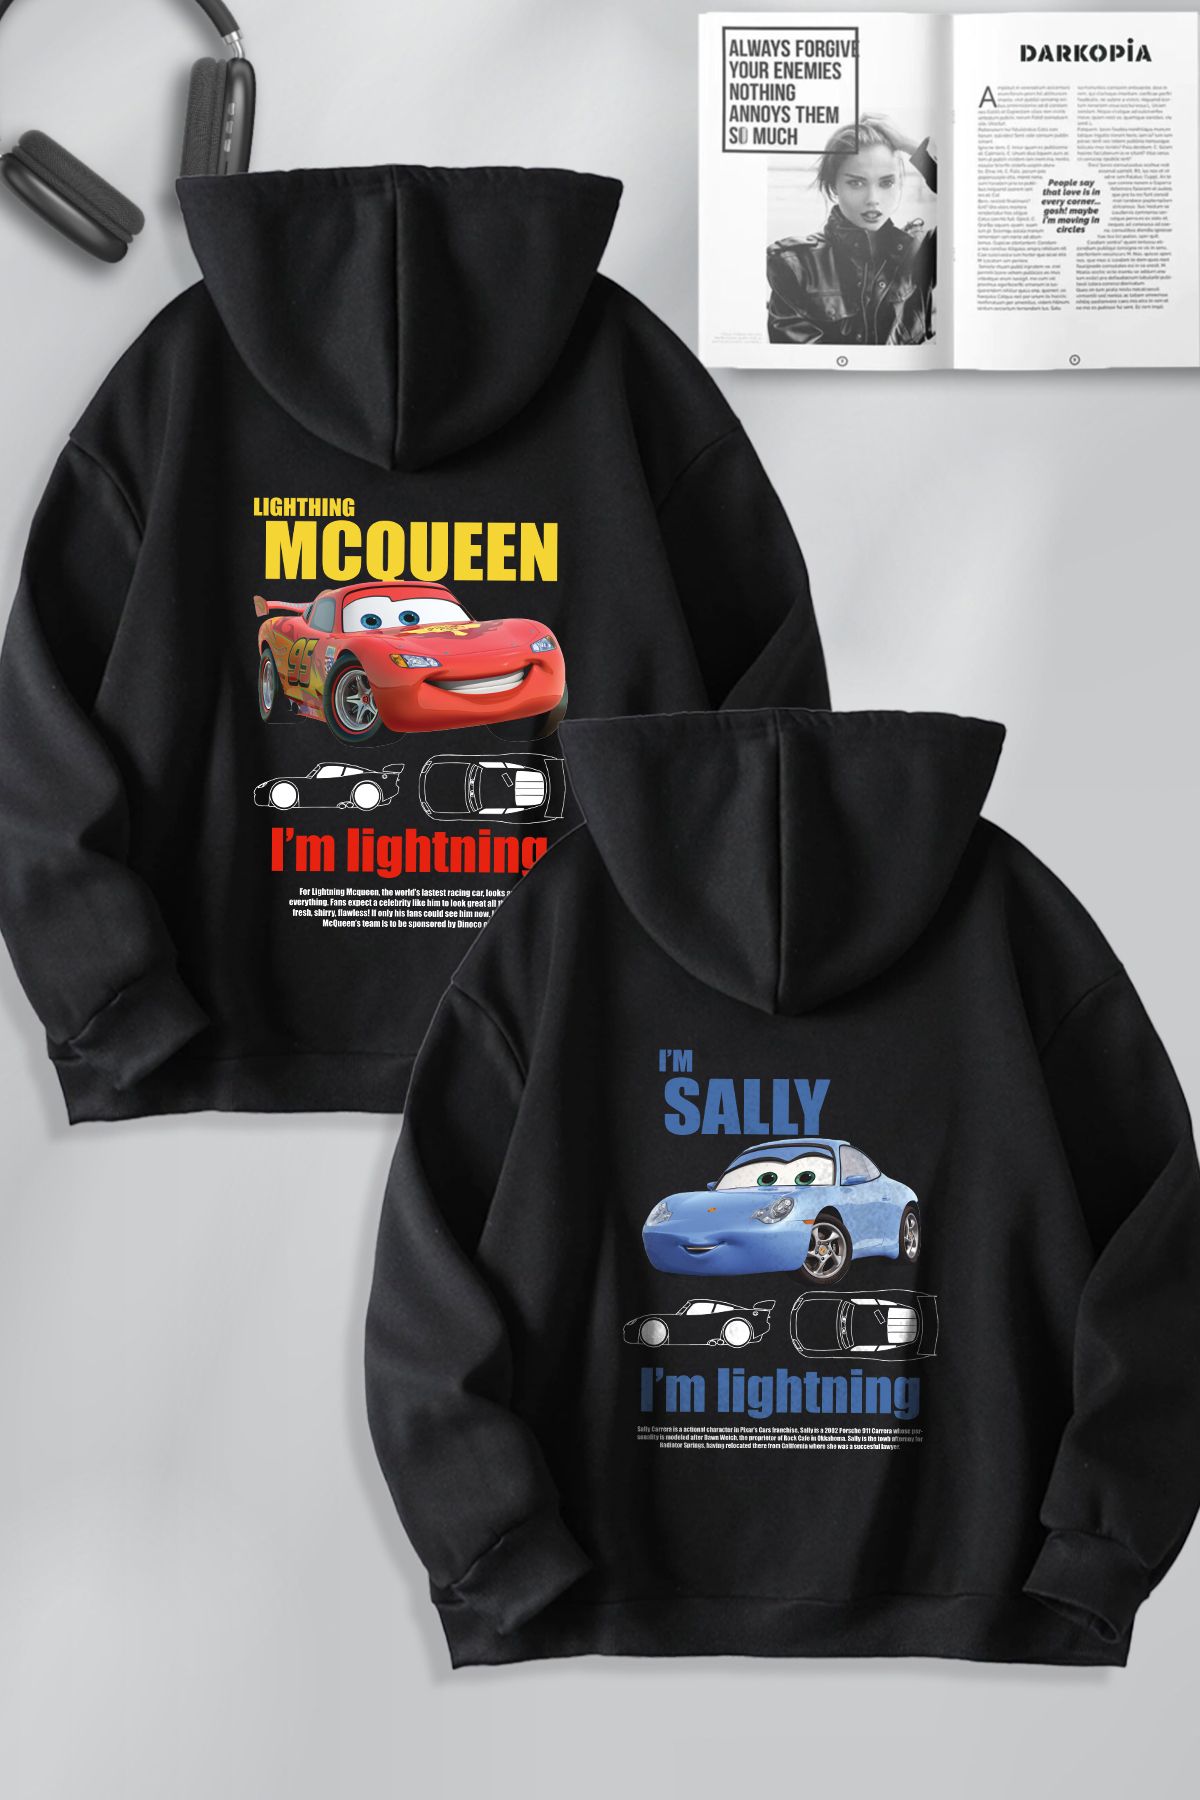 macklin Sevgili Çift Kombin Şimşek McQueen ve Sally Baskılı Özel Tasarım Kapüşonlu Sweatshirt 2li Set Takım